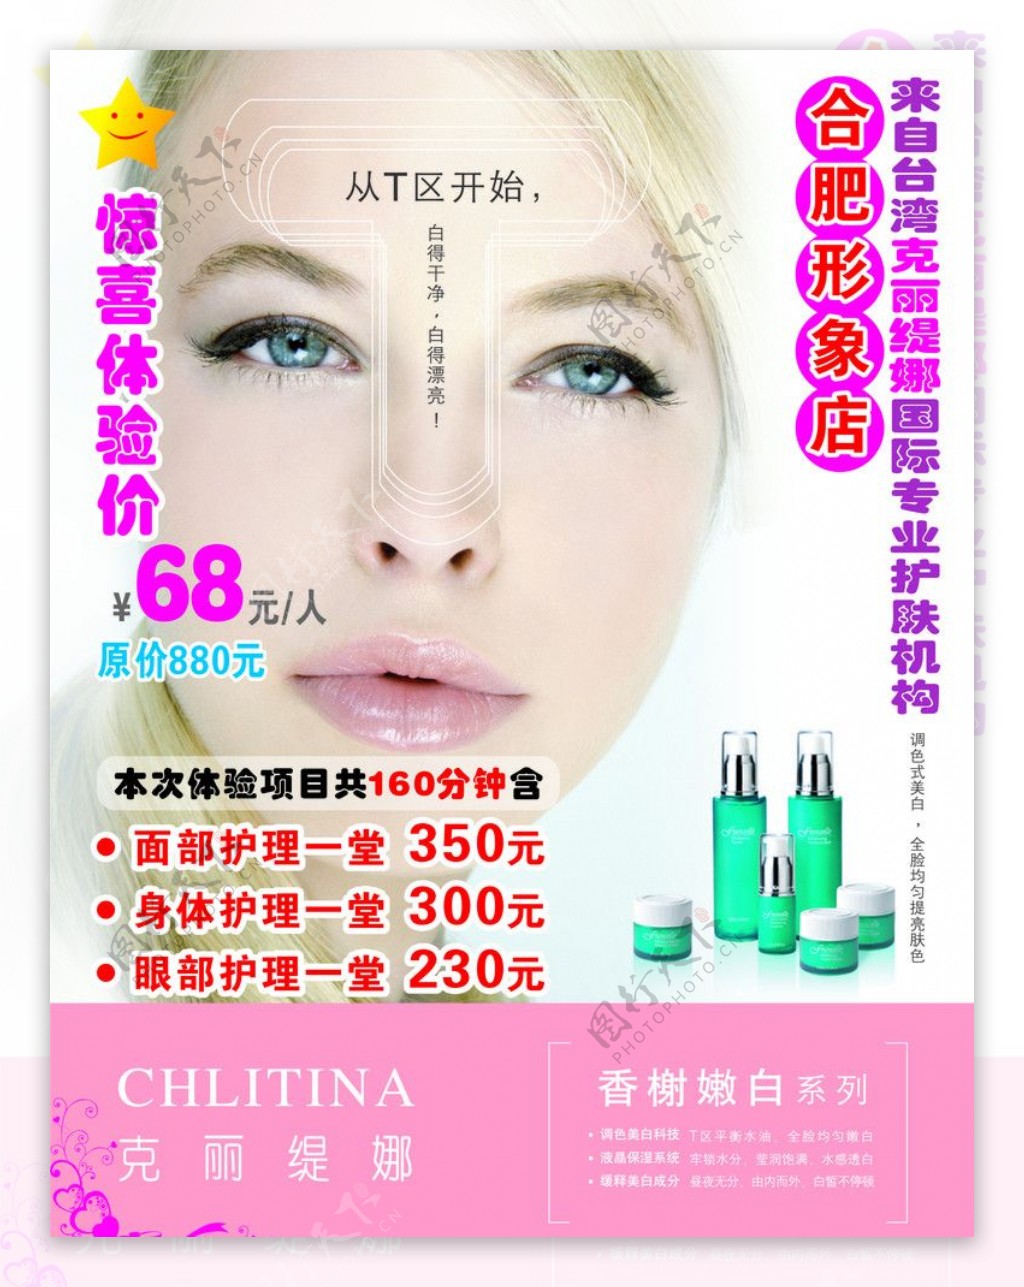 来自台湾克丽缇娜国际专业护肤机构图片